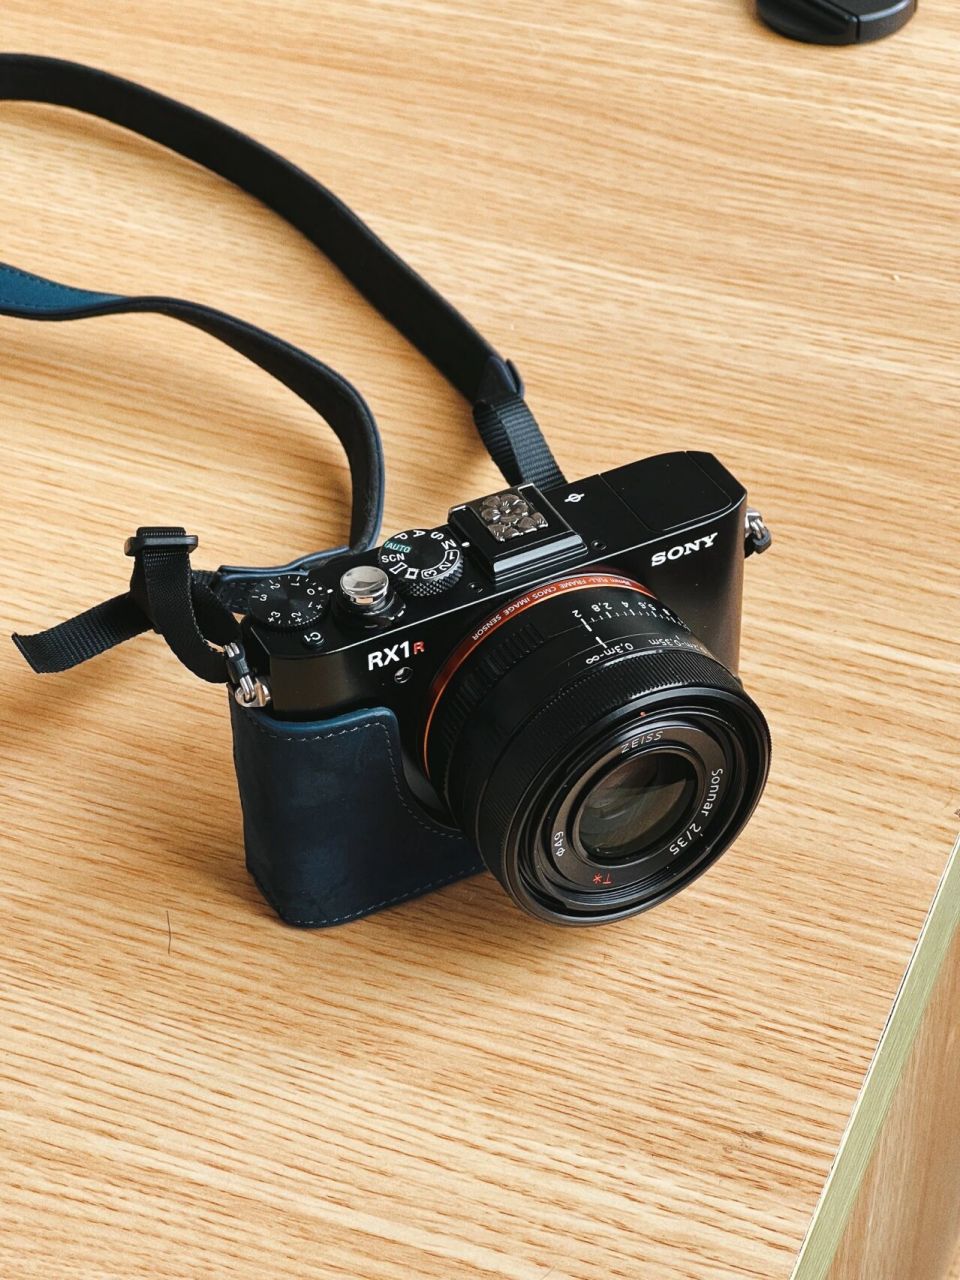 2022年入sony rx1rm2 卖掉xs10 换成了rx1r2,喜欢轻便的相机,在x100v